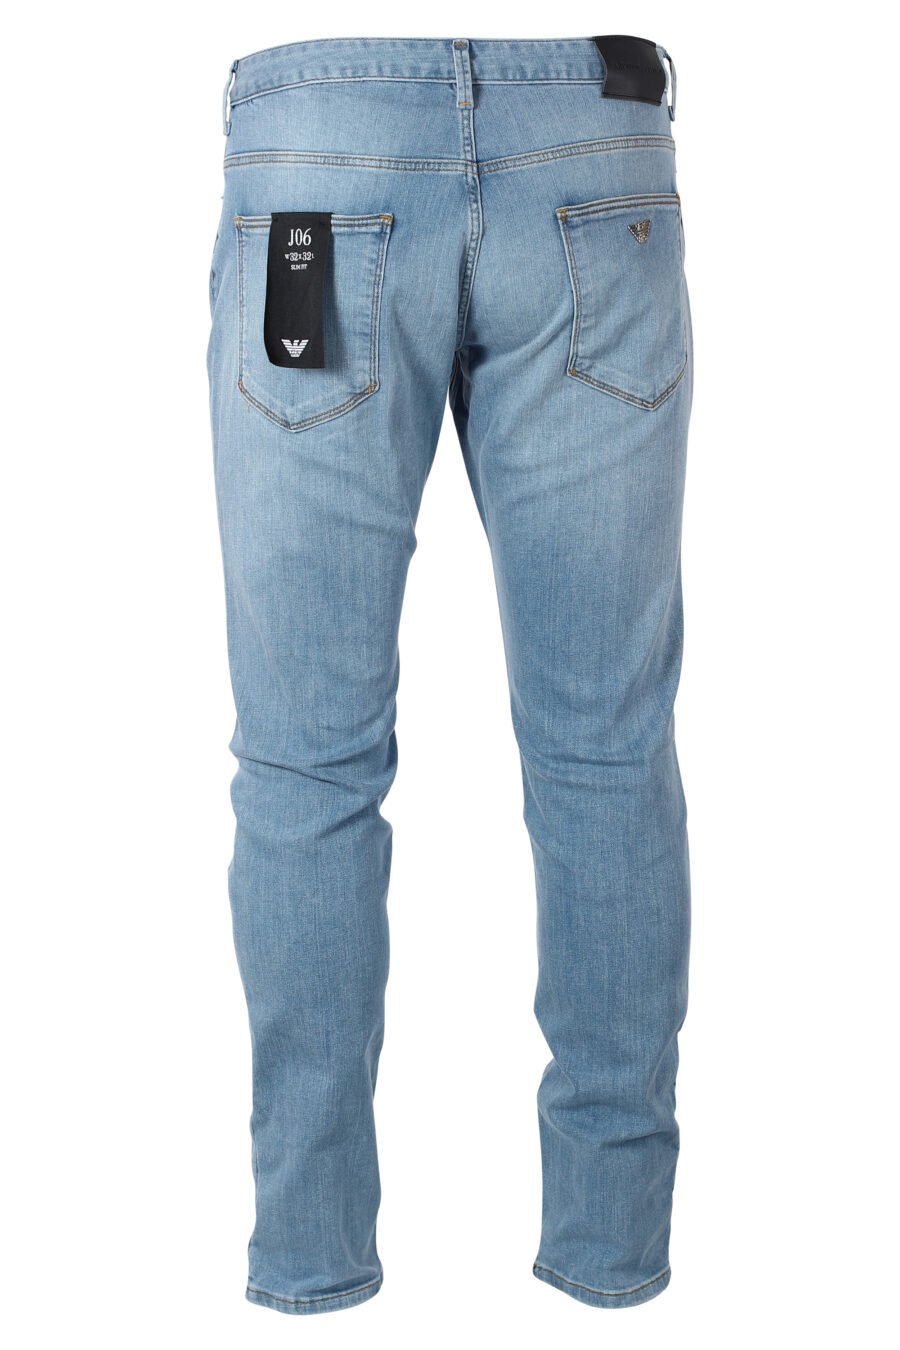 Pantalón vaquero azul claro con minilogo metal - IMG 9935